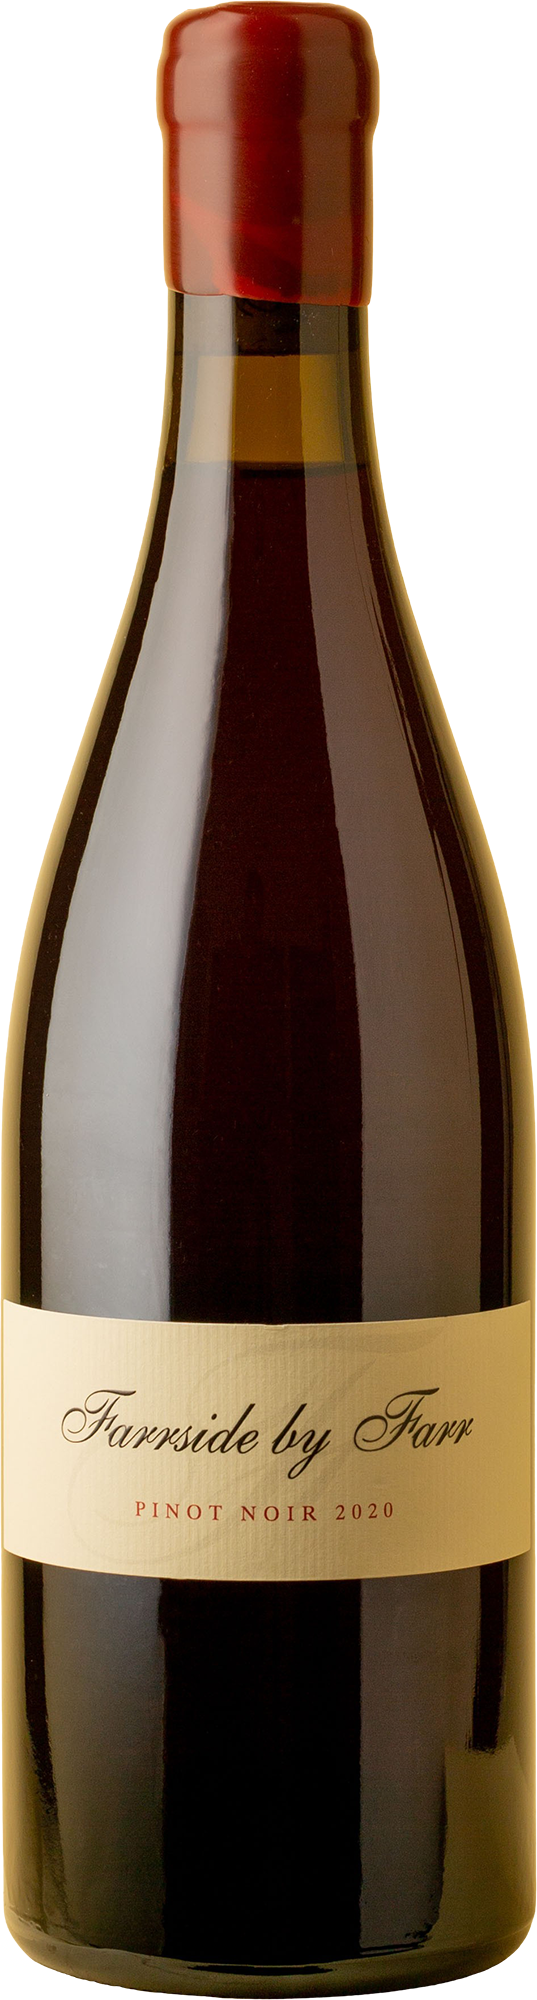 By Farr - Farrside Pinot Noir 2020 Red Wine